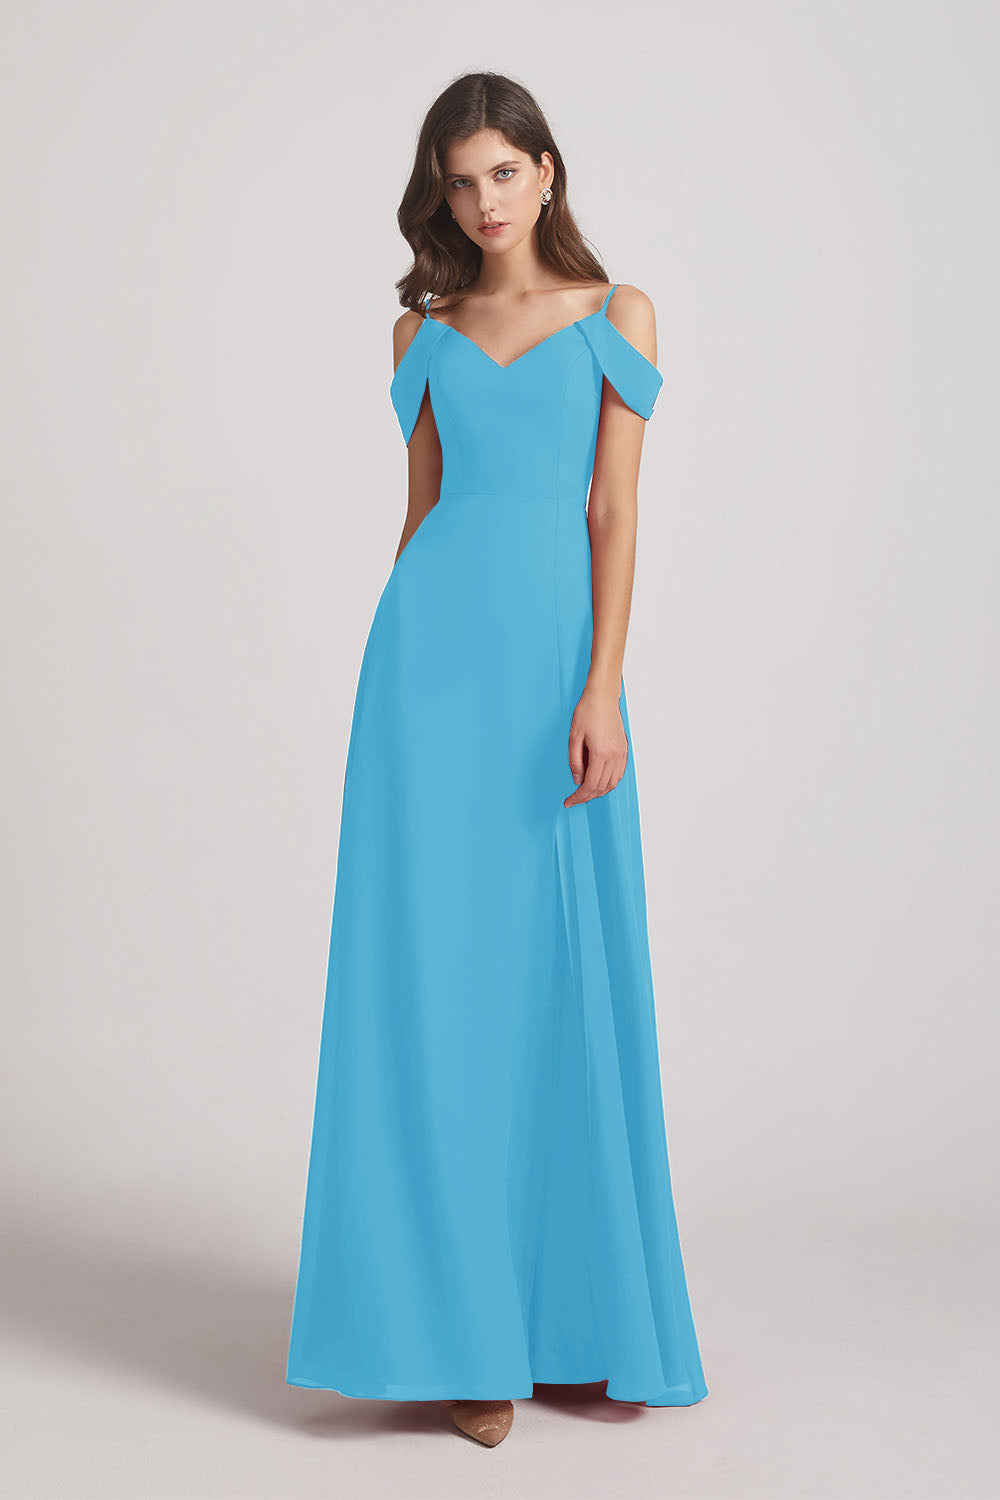 Alfa Bridal Ice Blue Chiffon Cold Shoulder V-Neck Bridesmaid Dresses with Slit (AF0093)